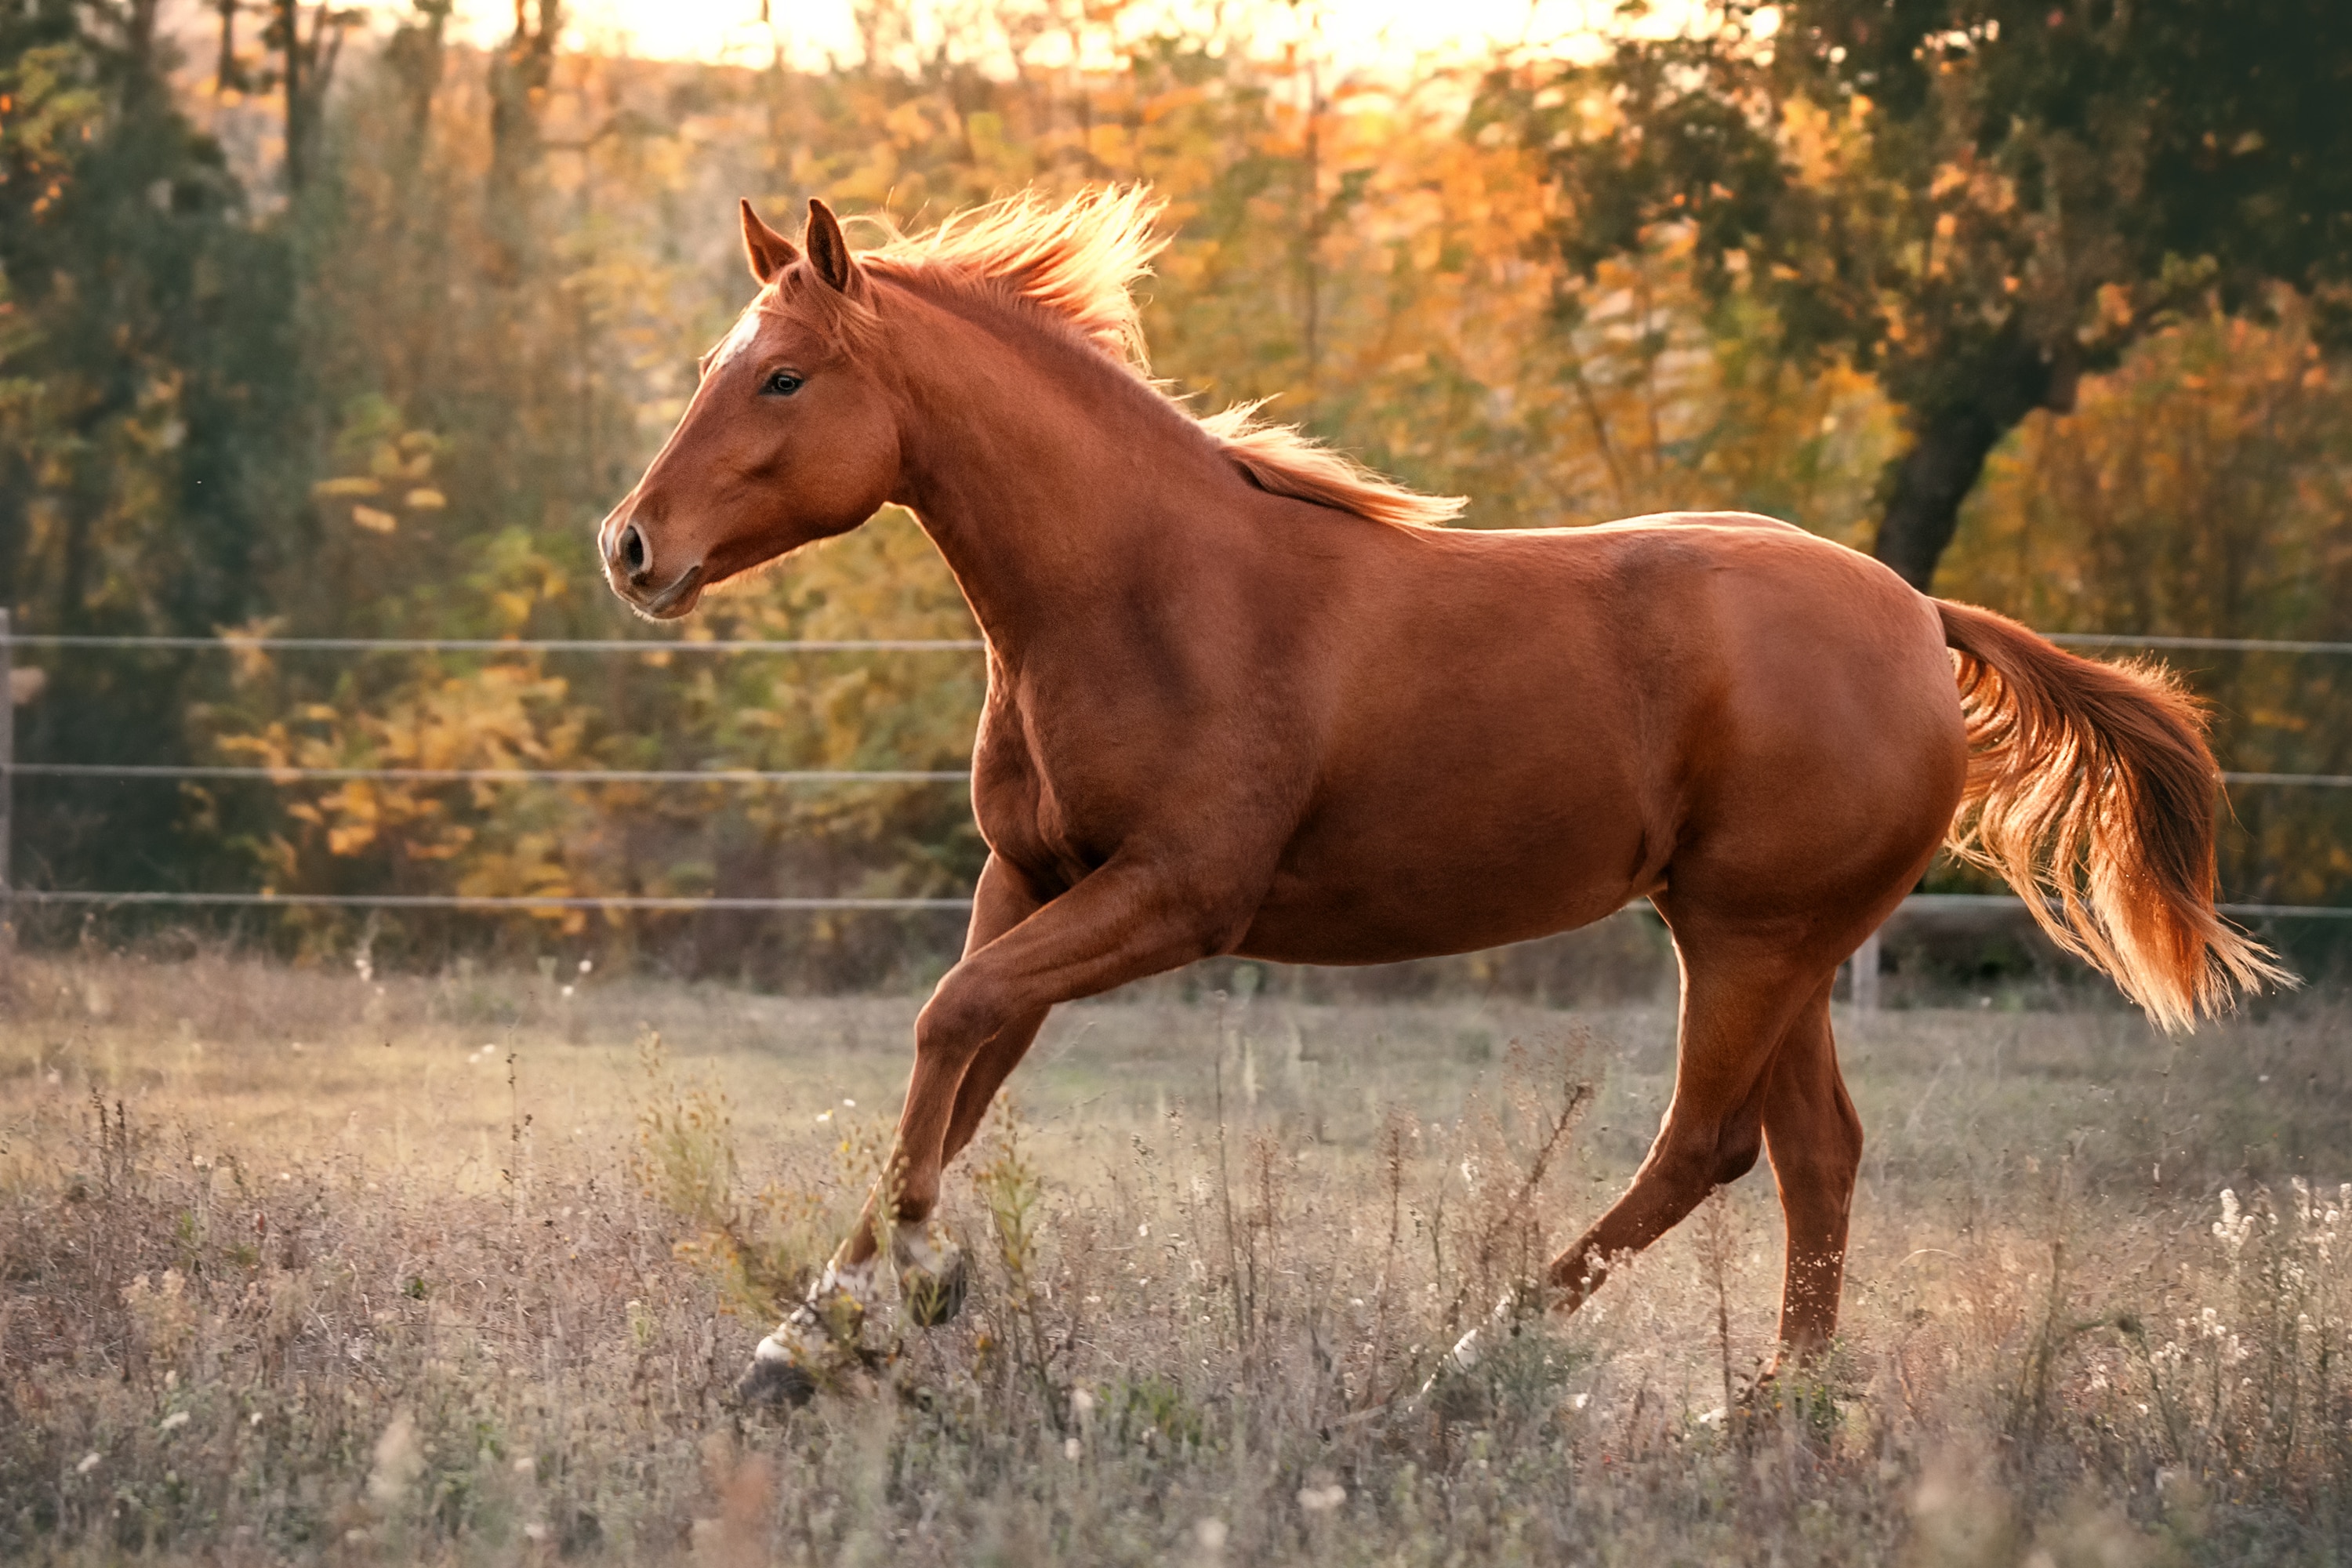 Quarter horse running in field